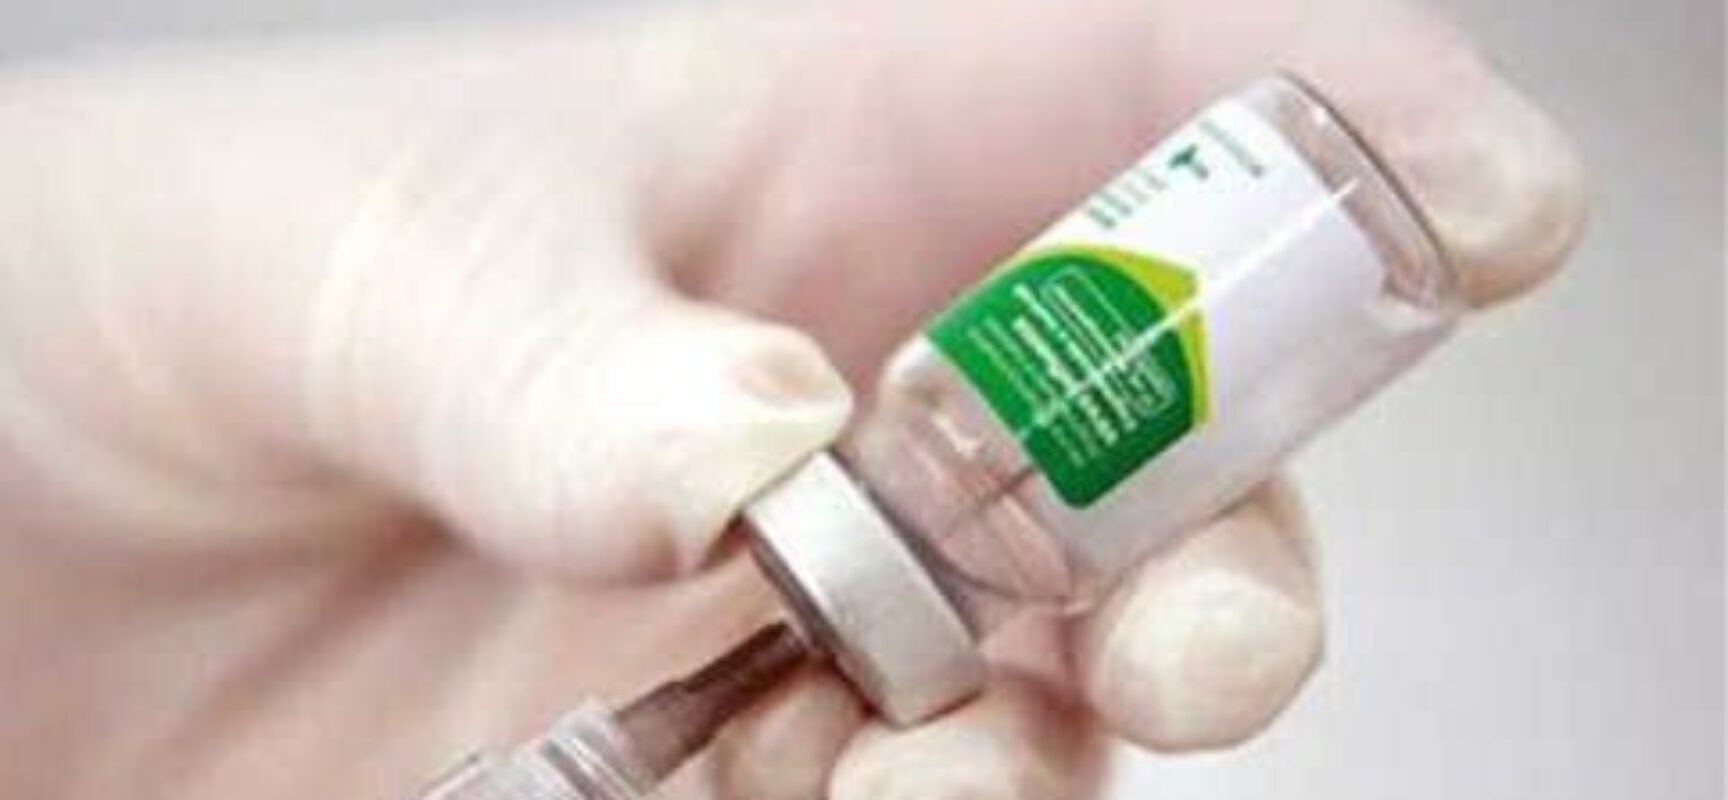 Ilhéus: Vacinação contra a gripe Influenza está disponível nos postos para todos a partir de 6 meses